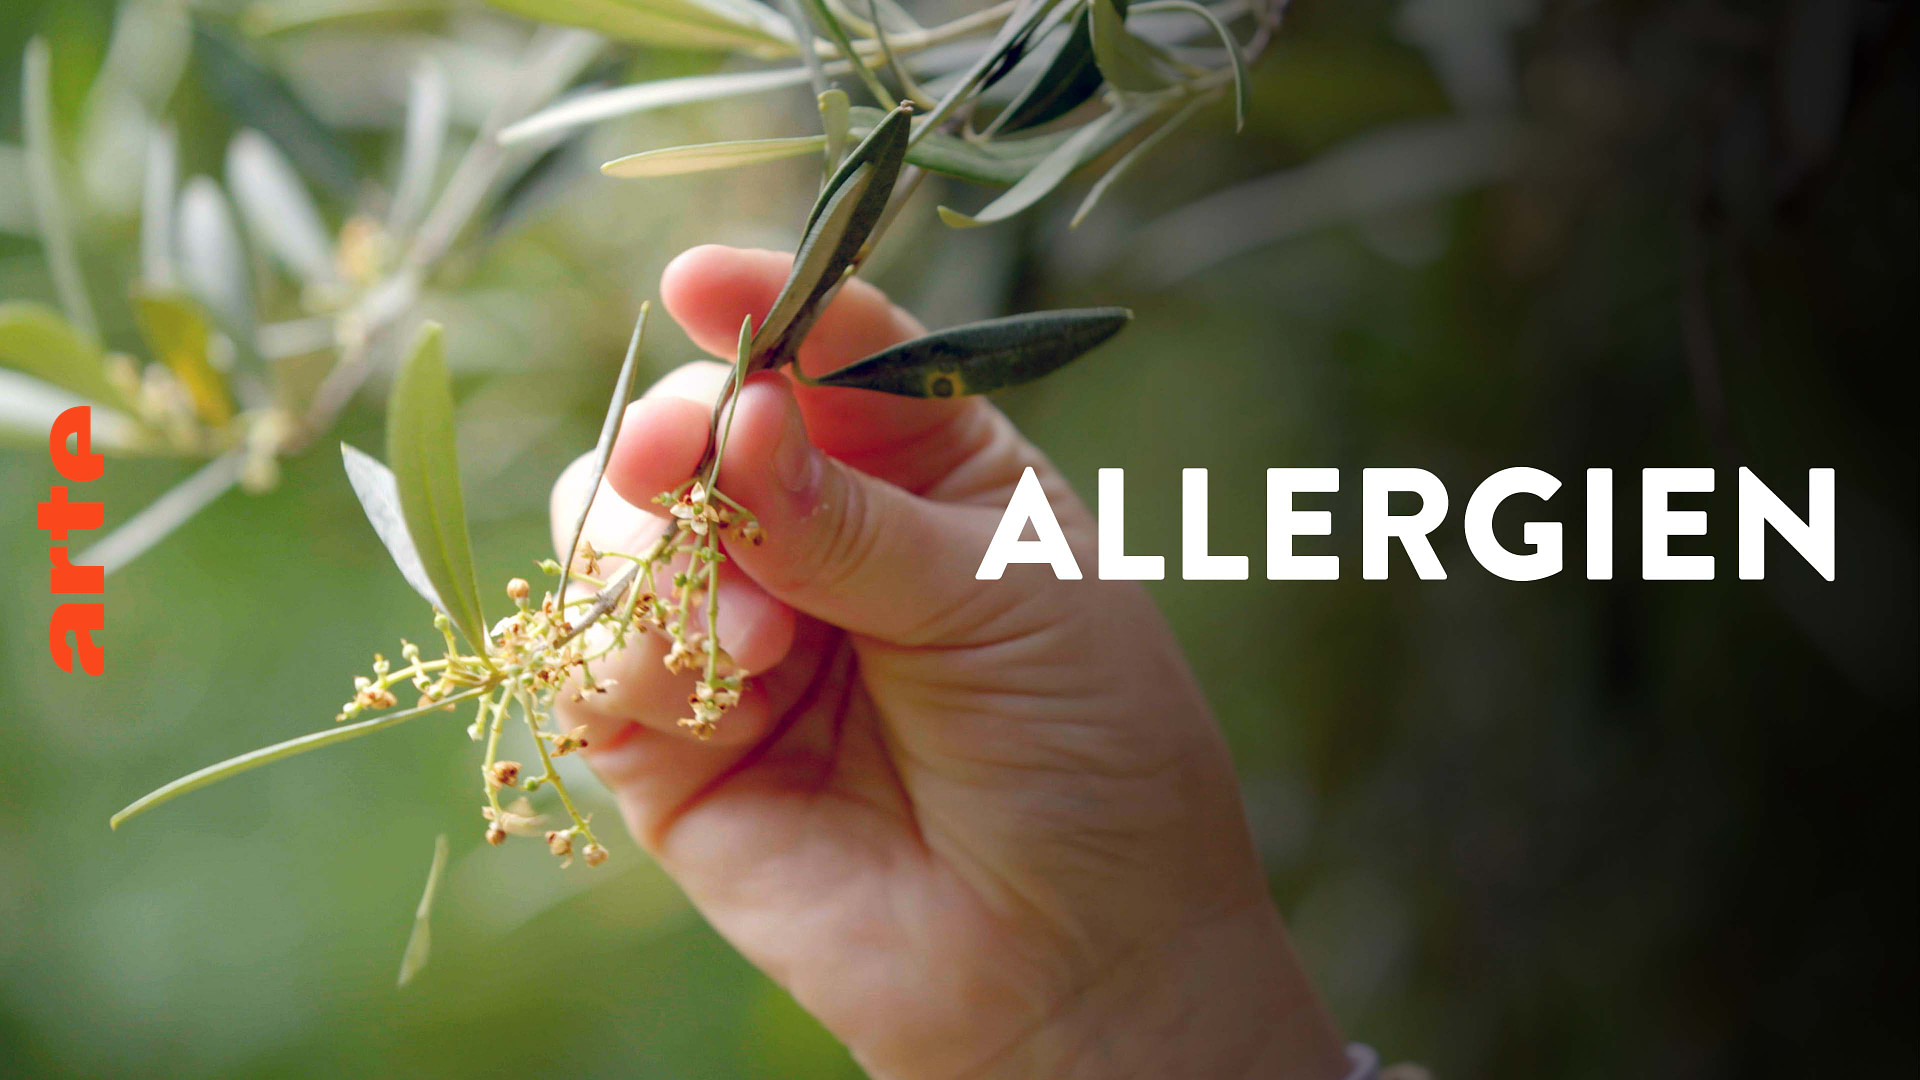 Allergien - wenn der Körper rebelliert